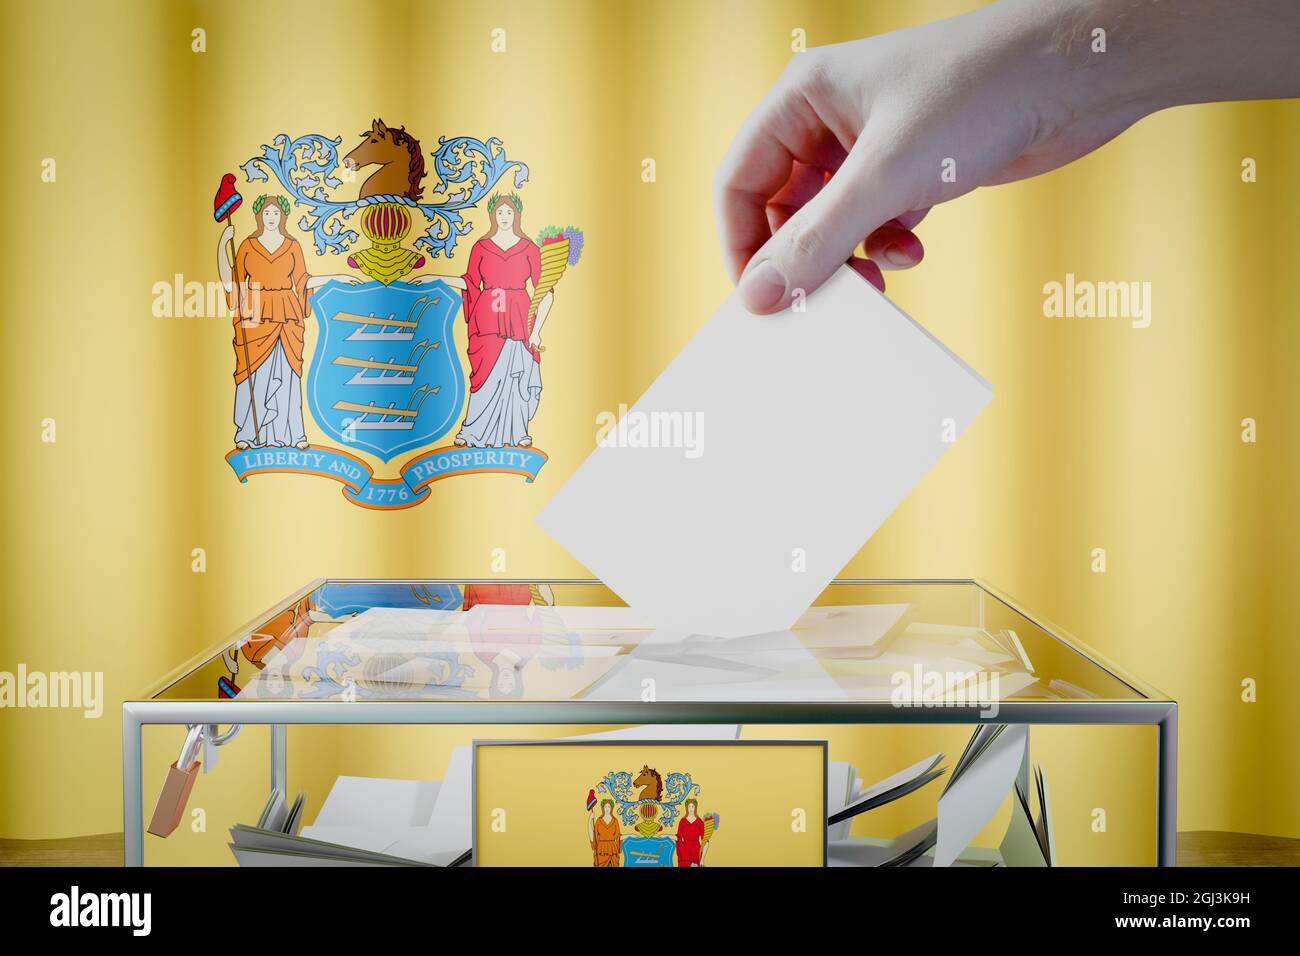 Bandiera del New Jersey, mano che cade la scheda di voto in una scatola - voto, concetto di elezione - illustrazione 3D Foto Stock